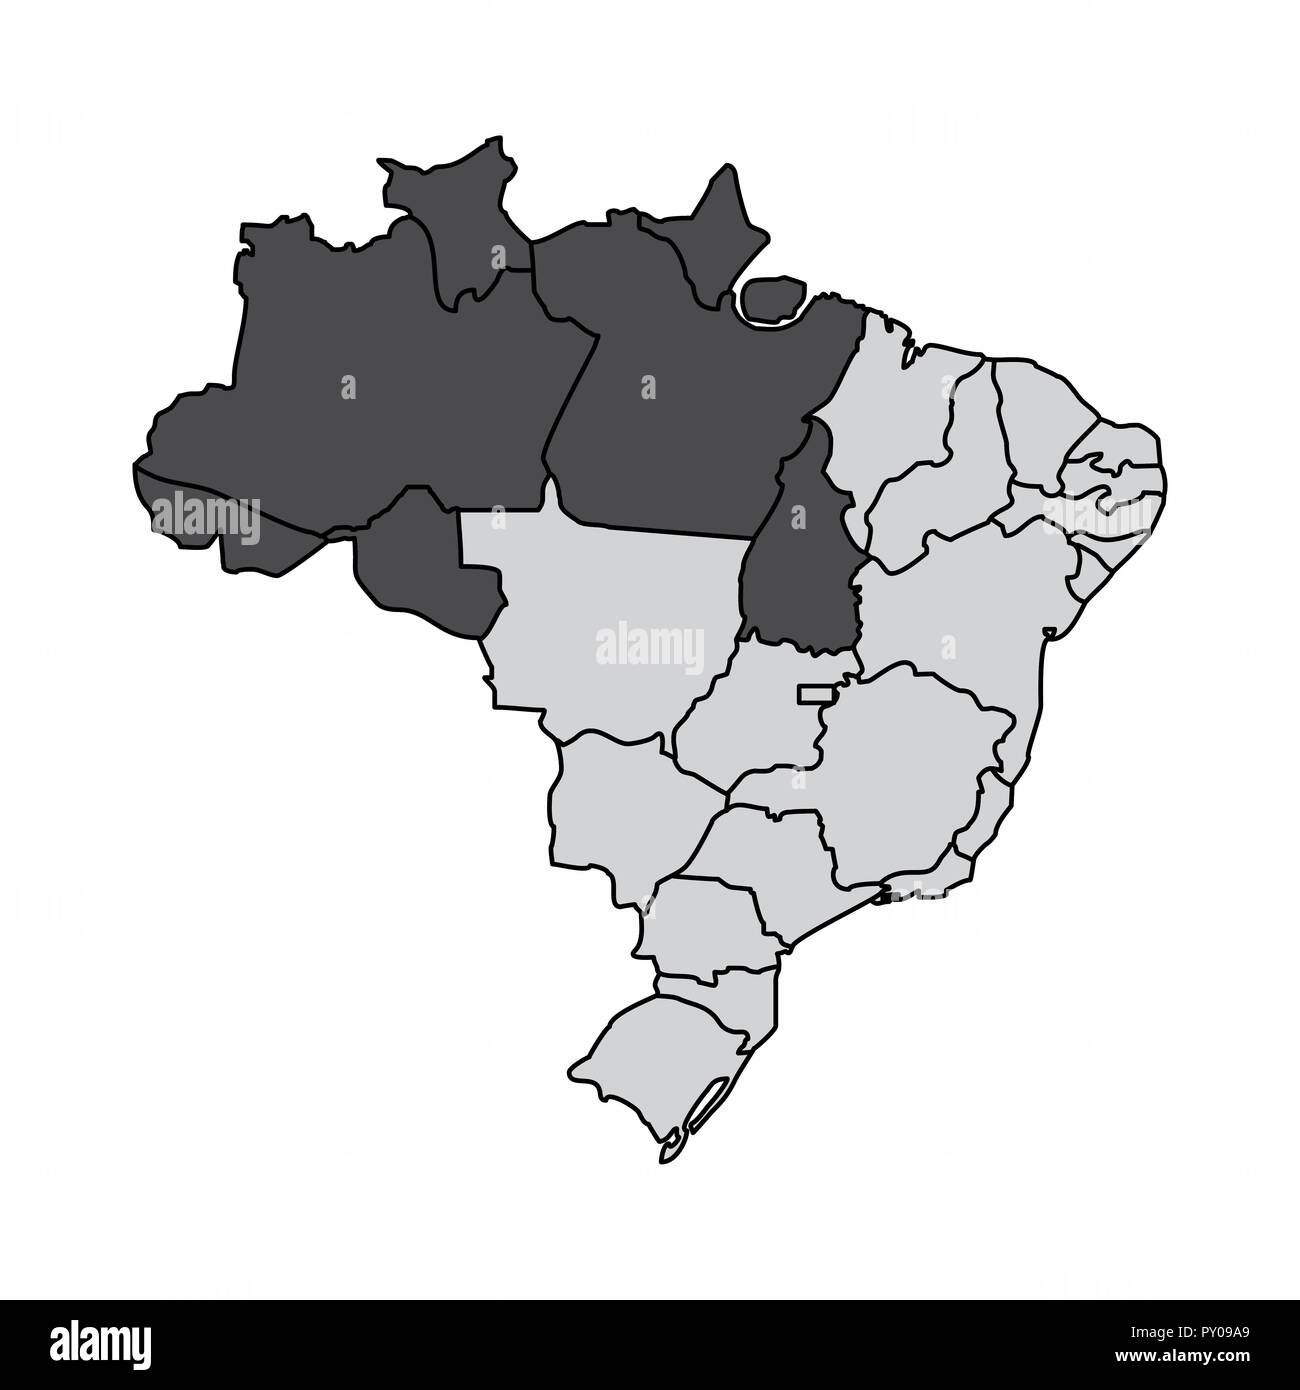 Illustrazione di una mappa del Brasile con la regione nord evidenziata Illustrazione Vettoriale